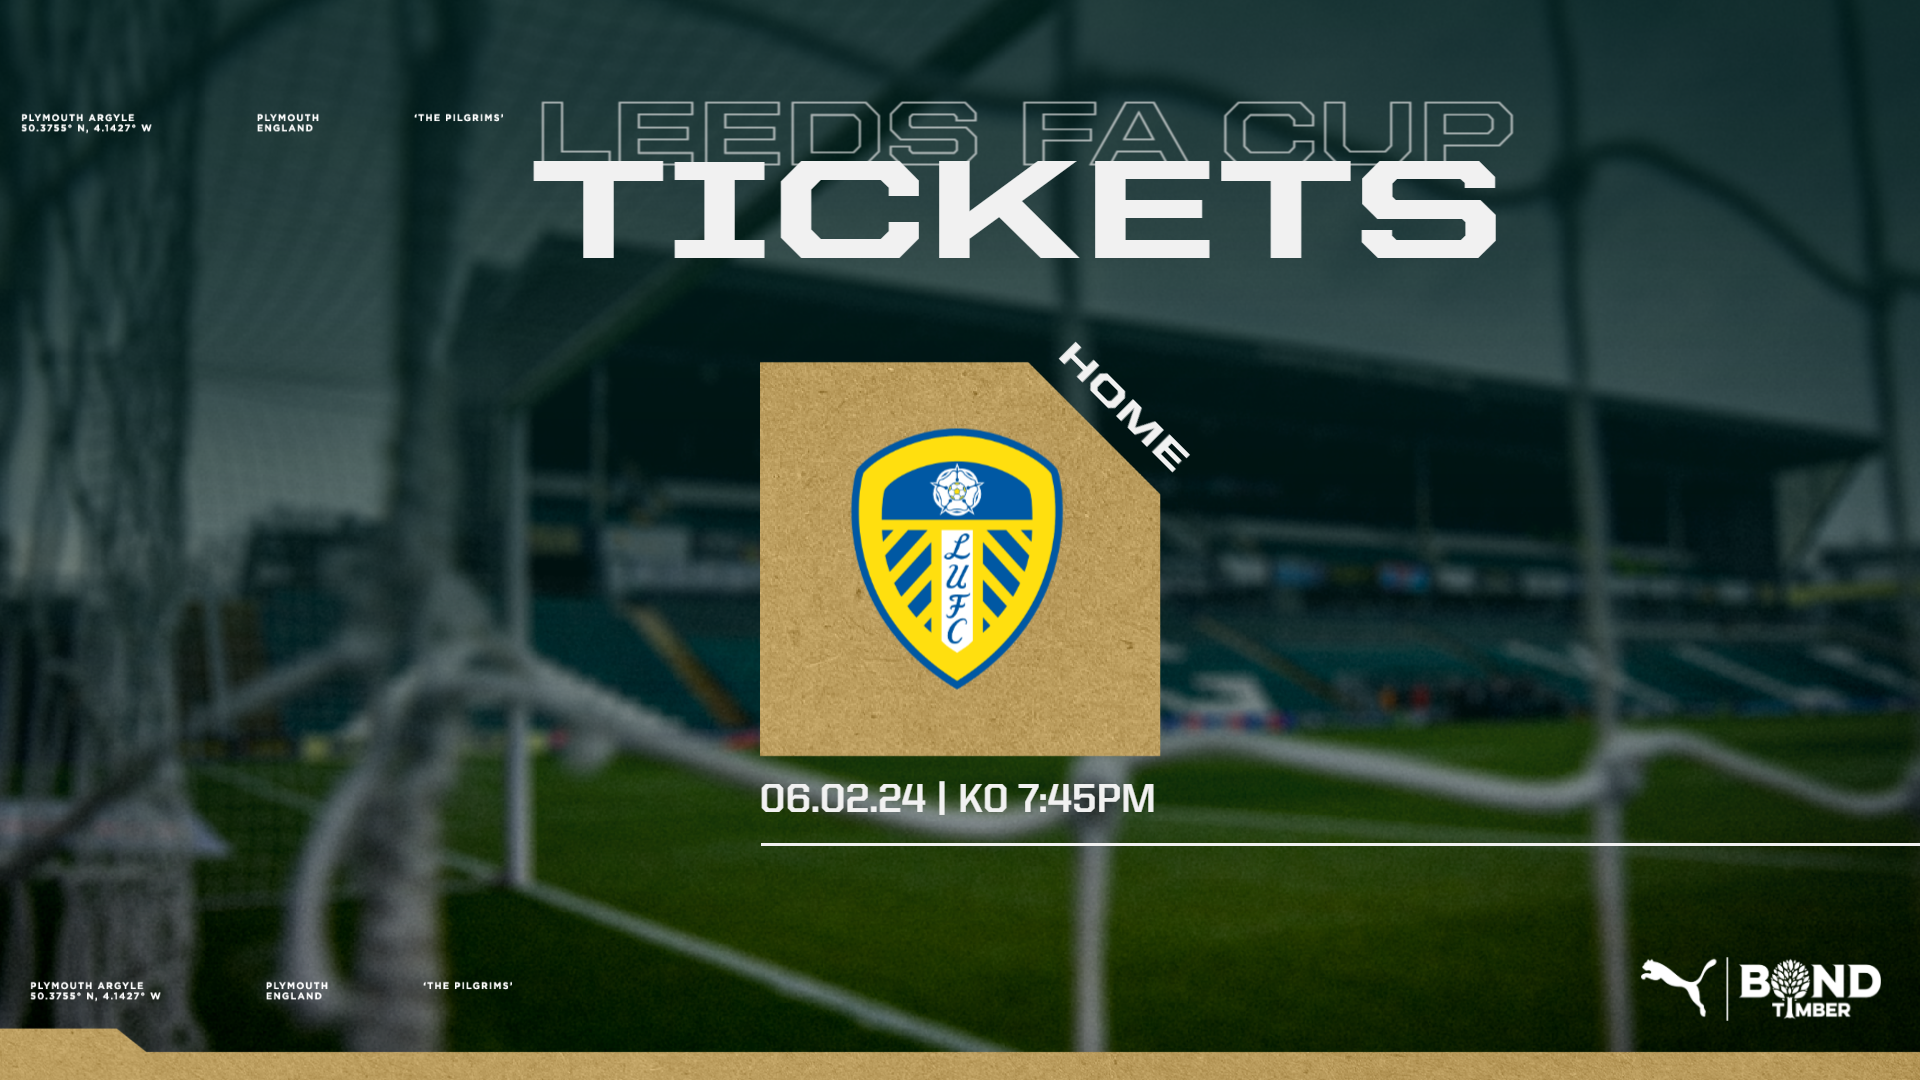 Leeds tickets